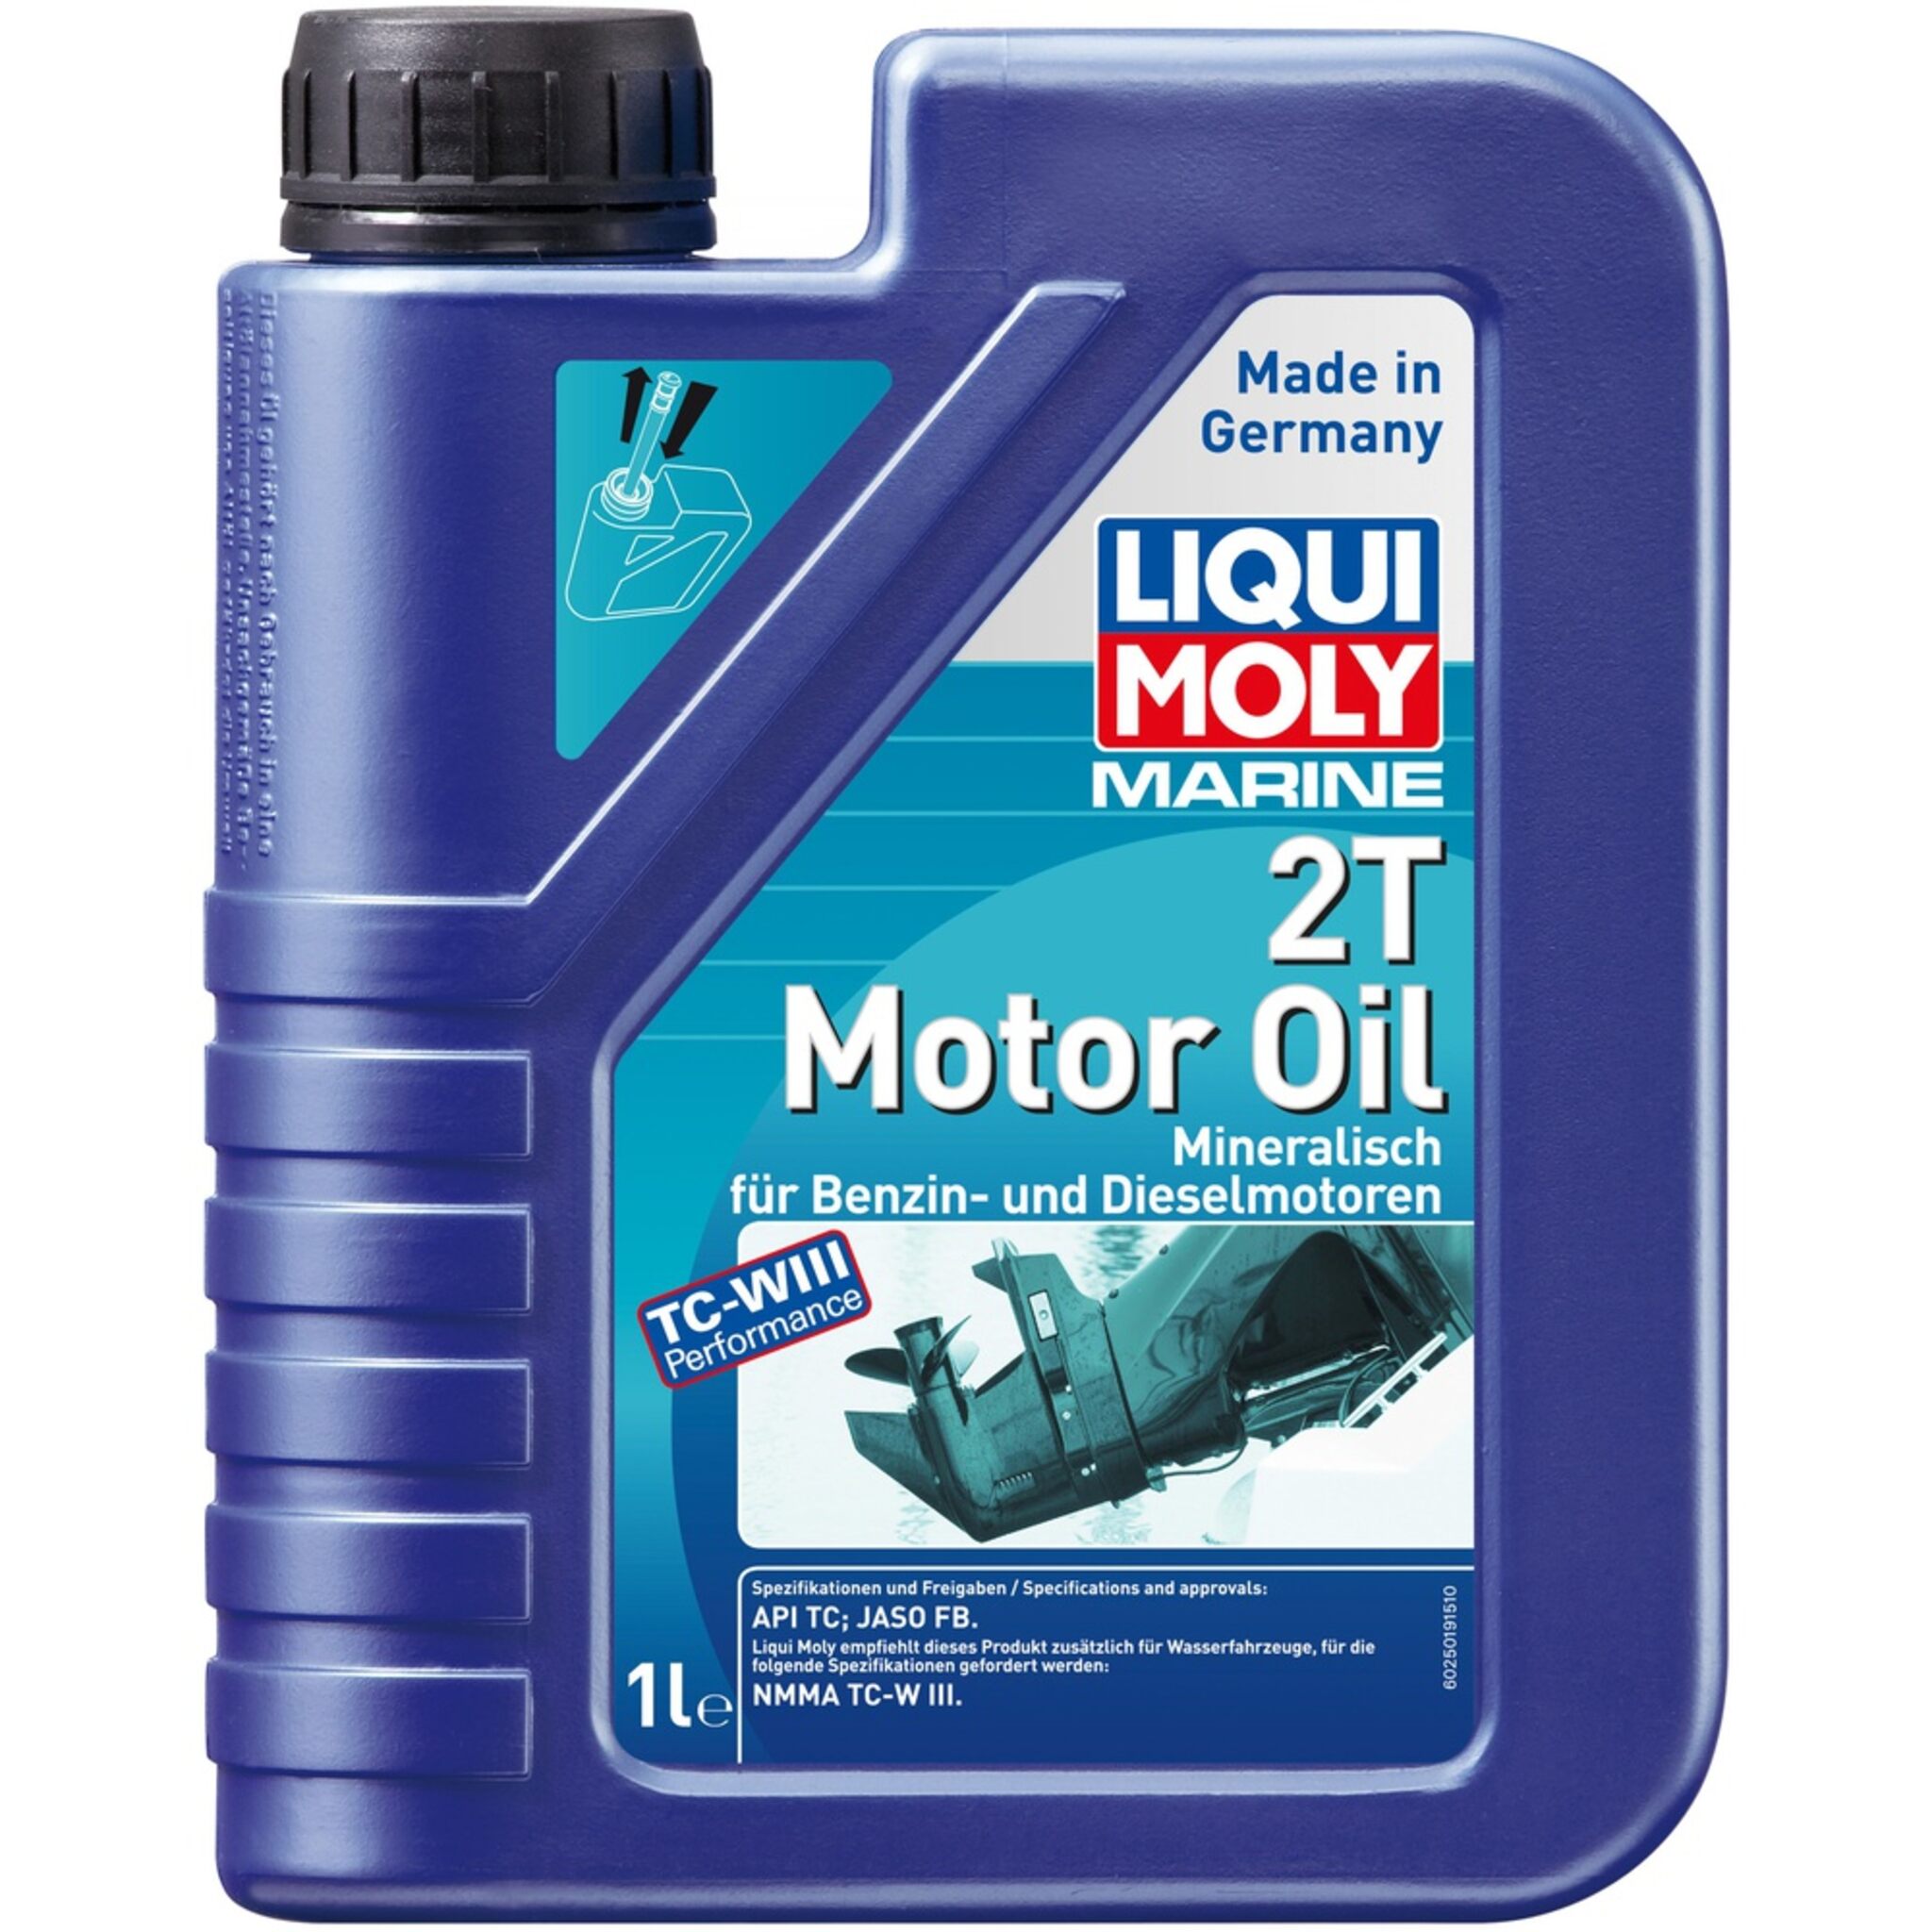 Liqui Moly Marine 2T Motor Oil Fully Synthetic